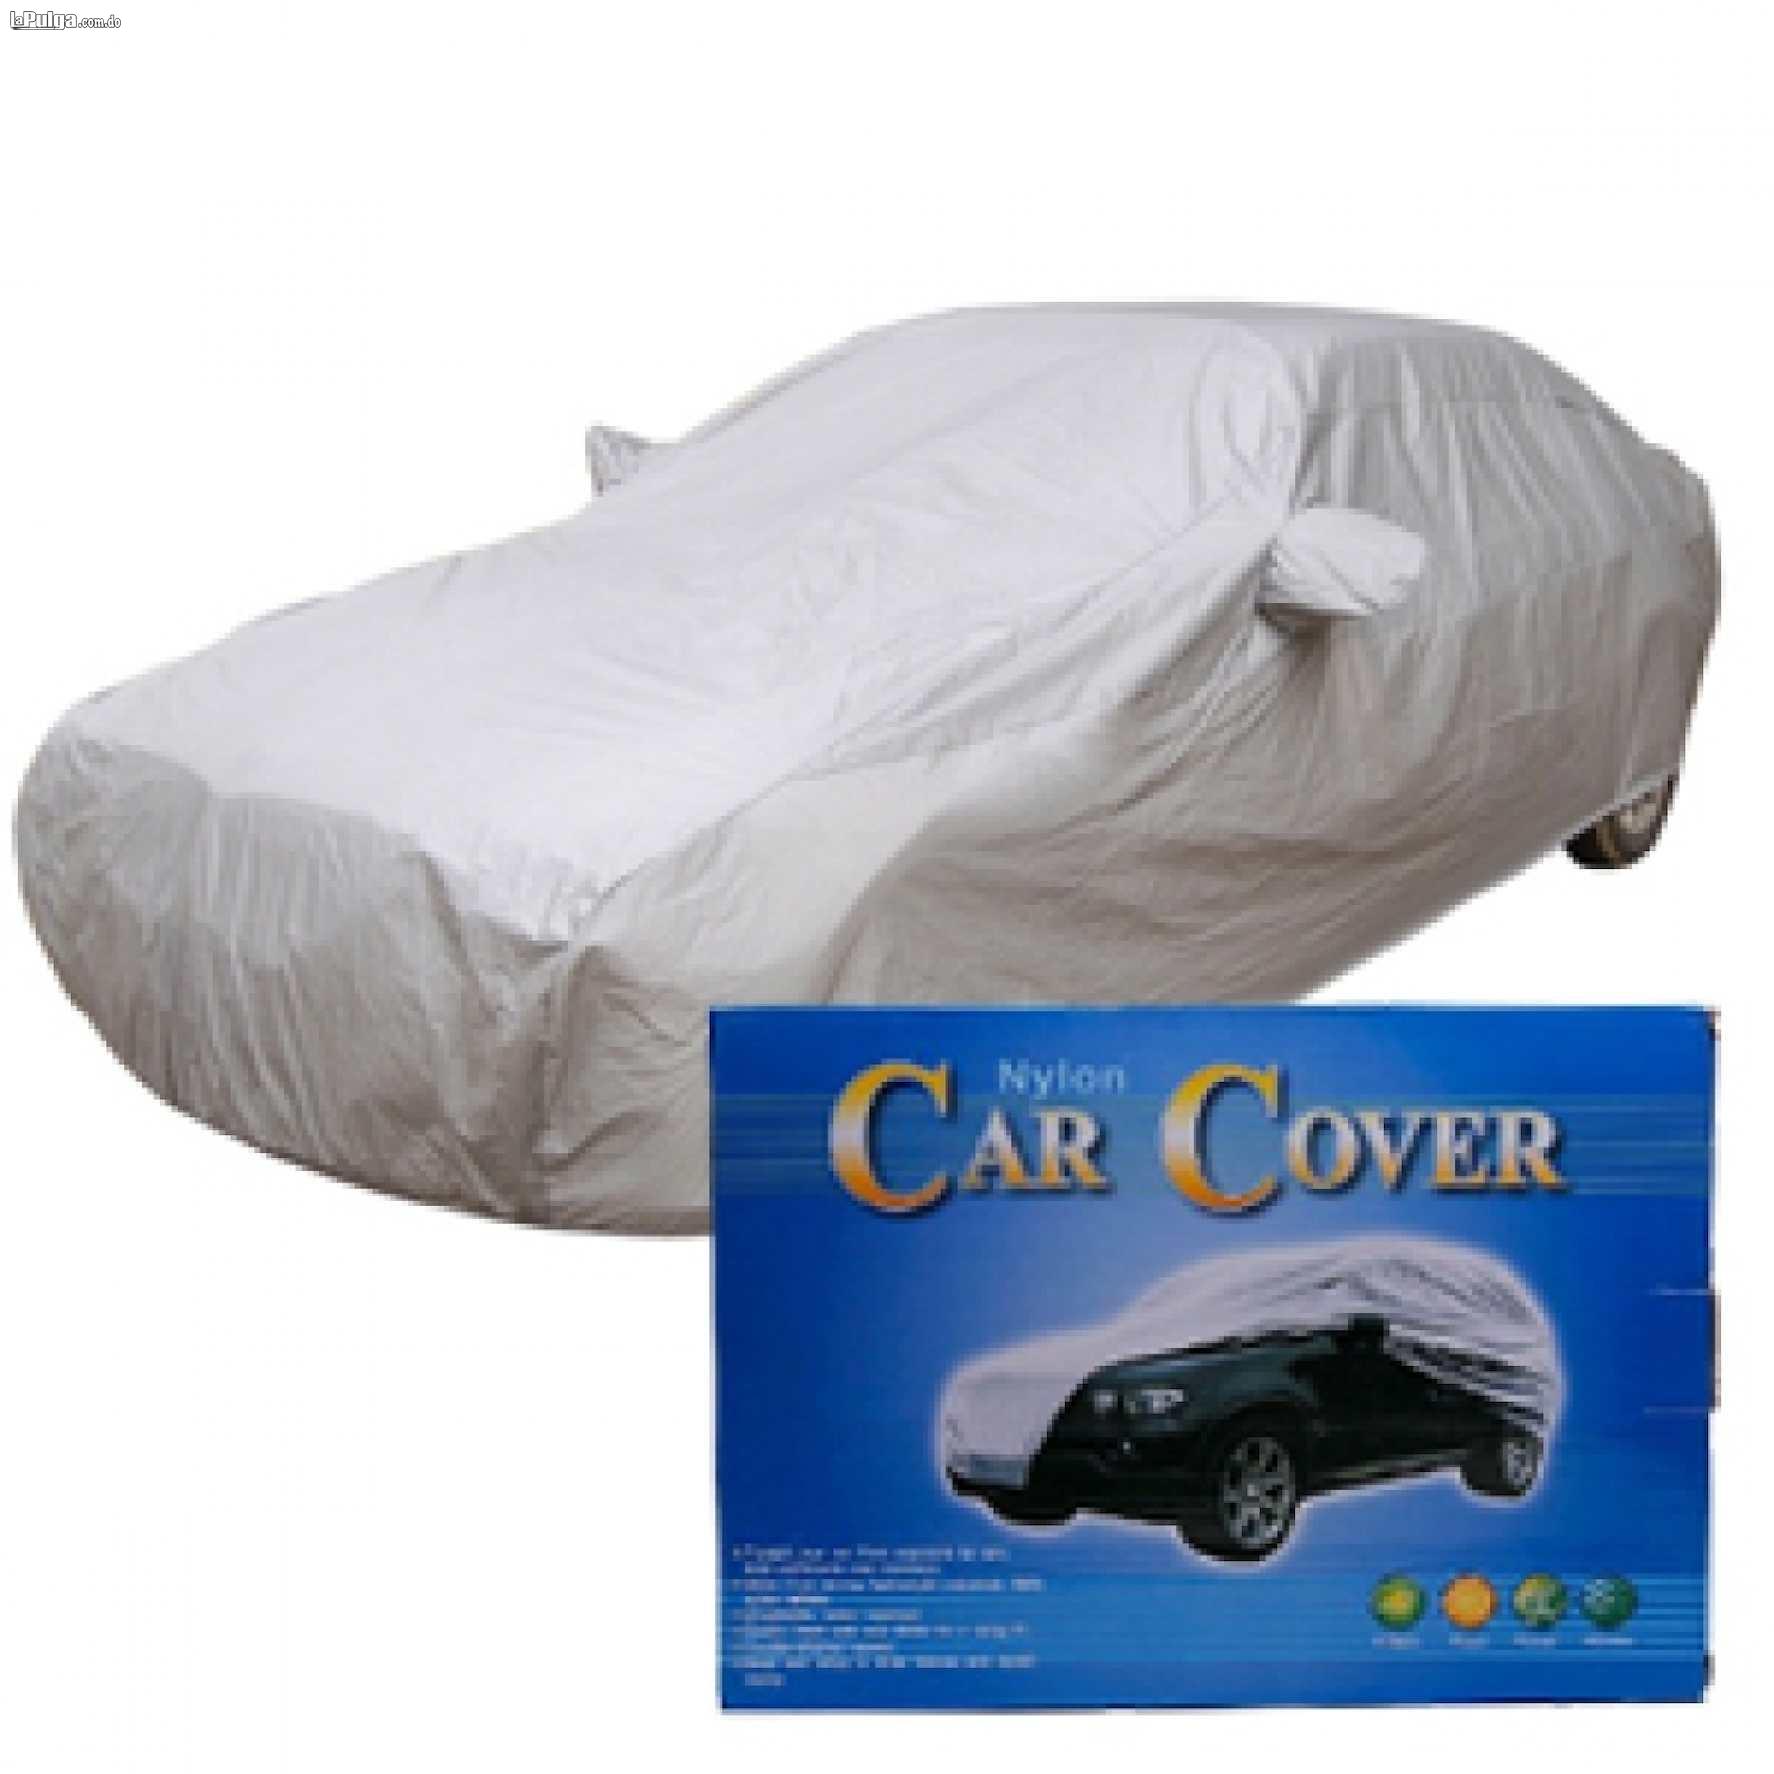 Cover de vehiculo forro protector cover carro Foto 7016406-1.jpg